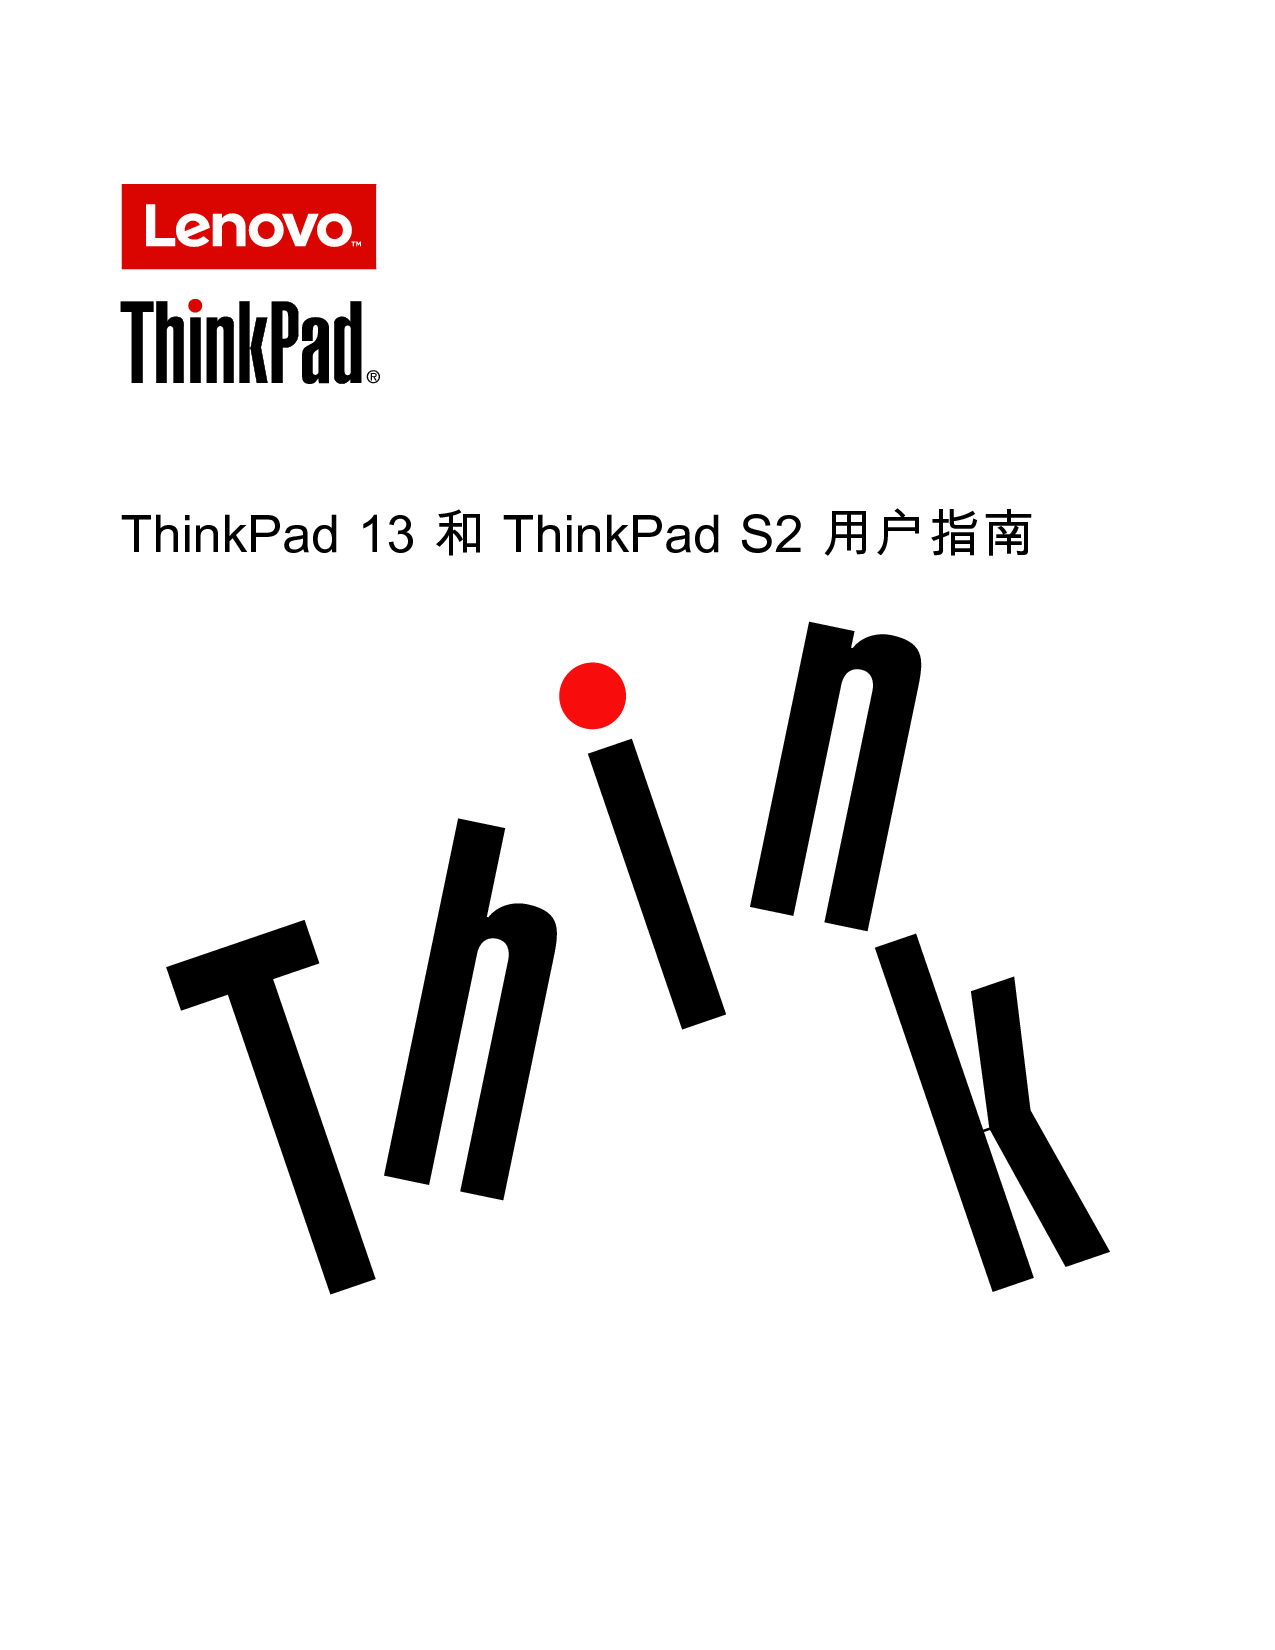 联想 Lenovo ThinkPad 13 用户指南 封面